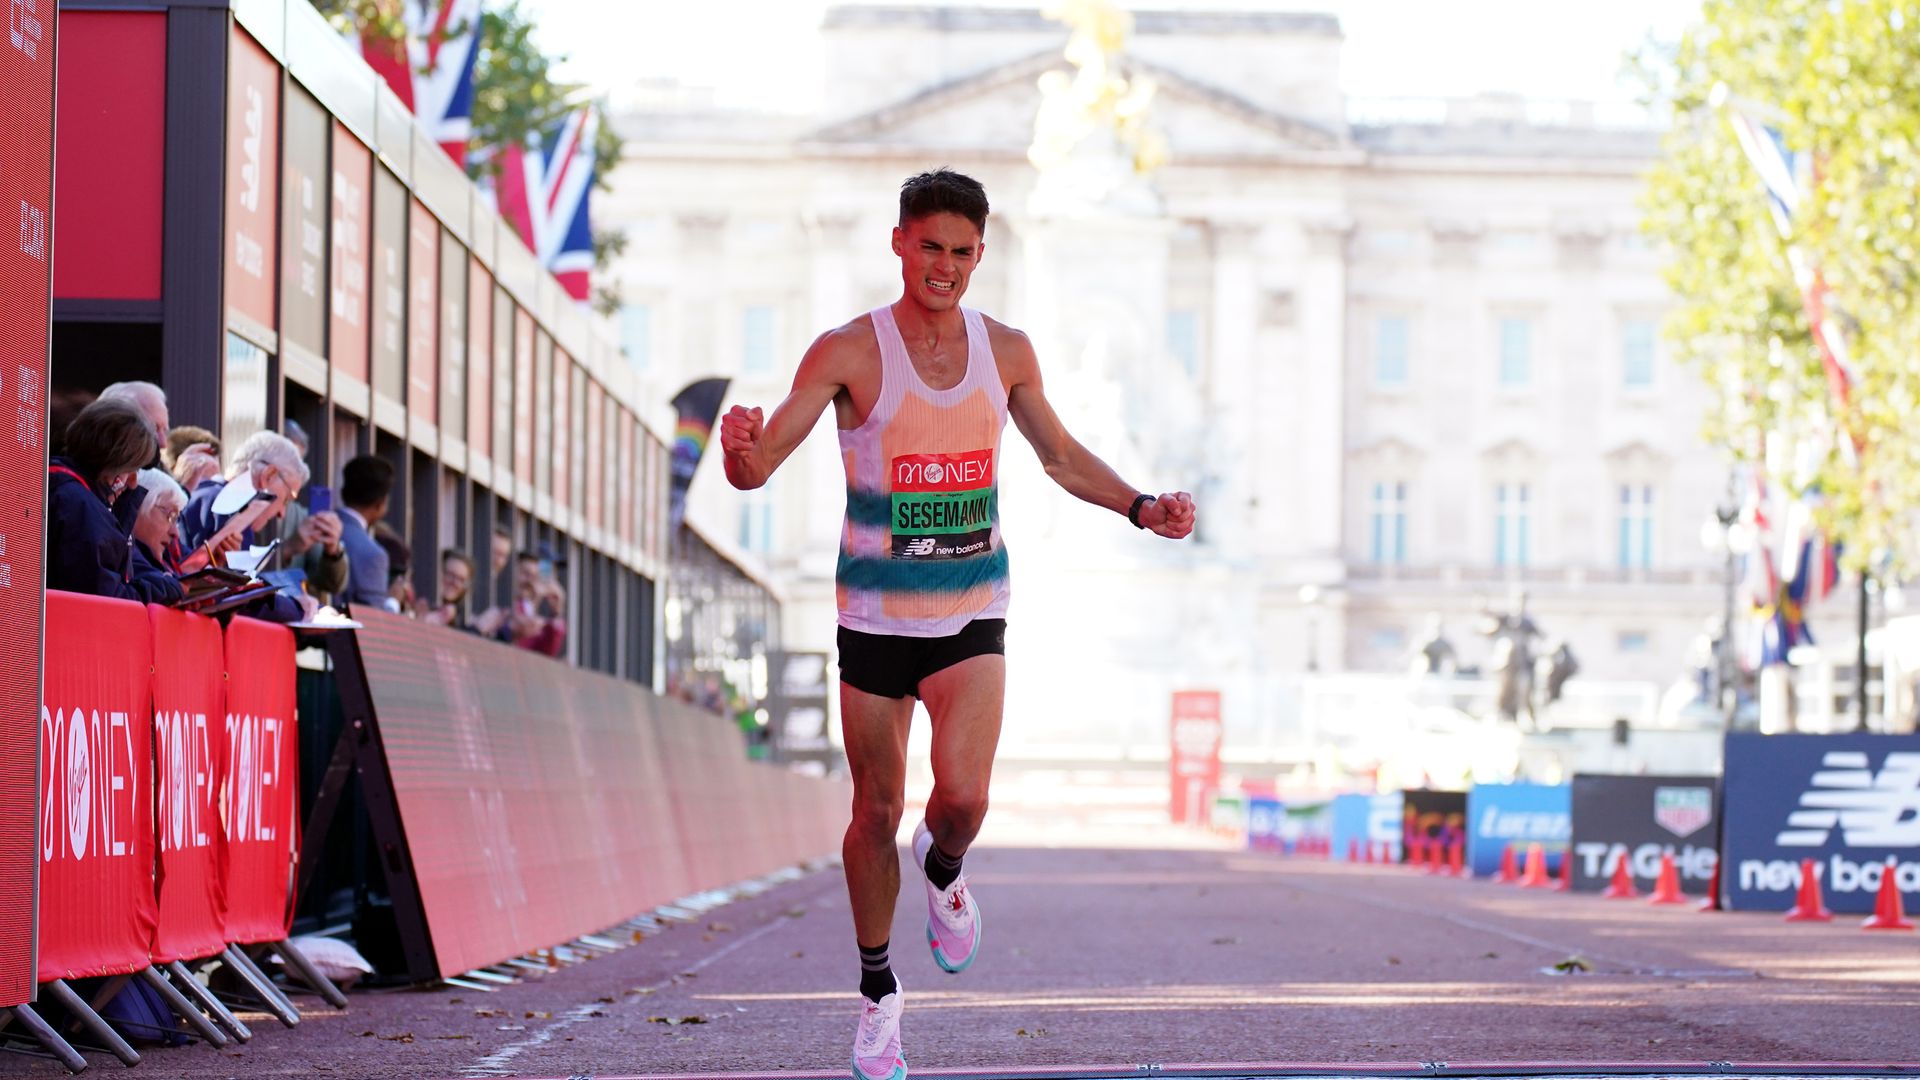 The doctor turned marathon runner awaiting 'dream' Olympic debut